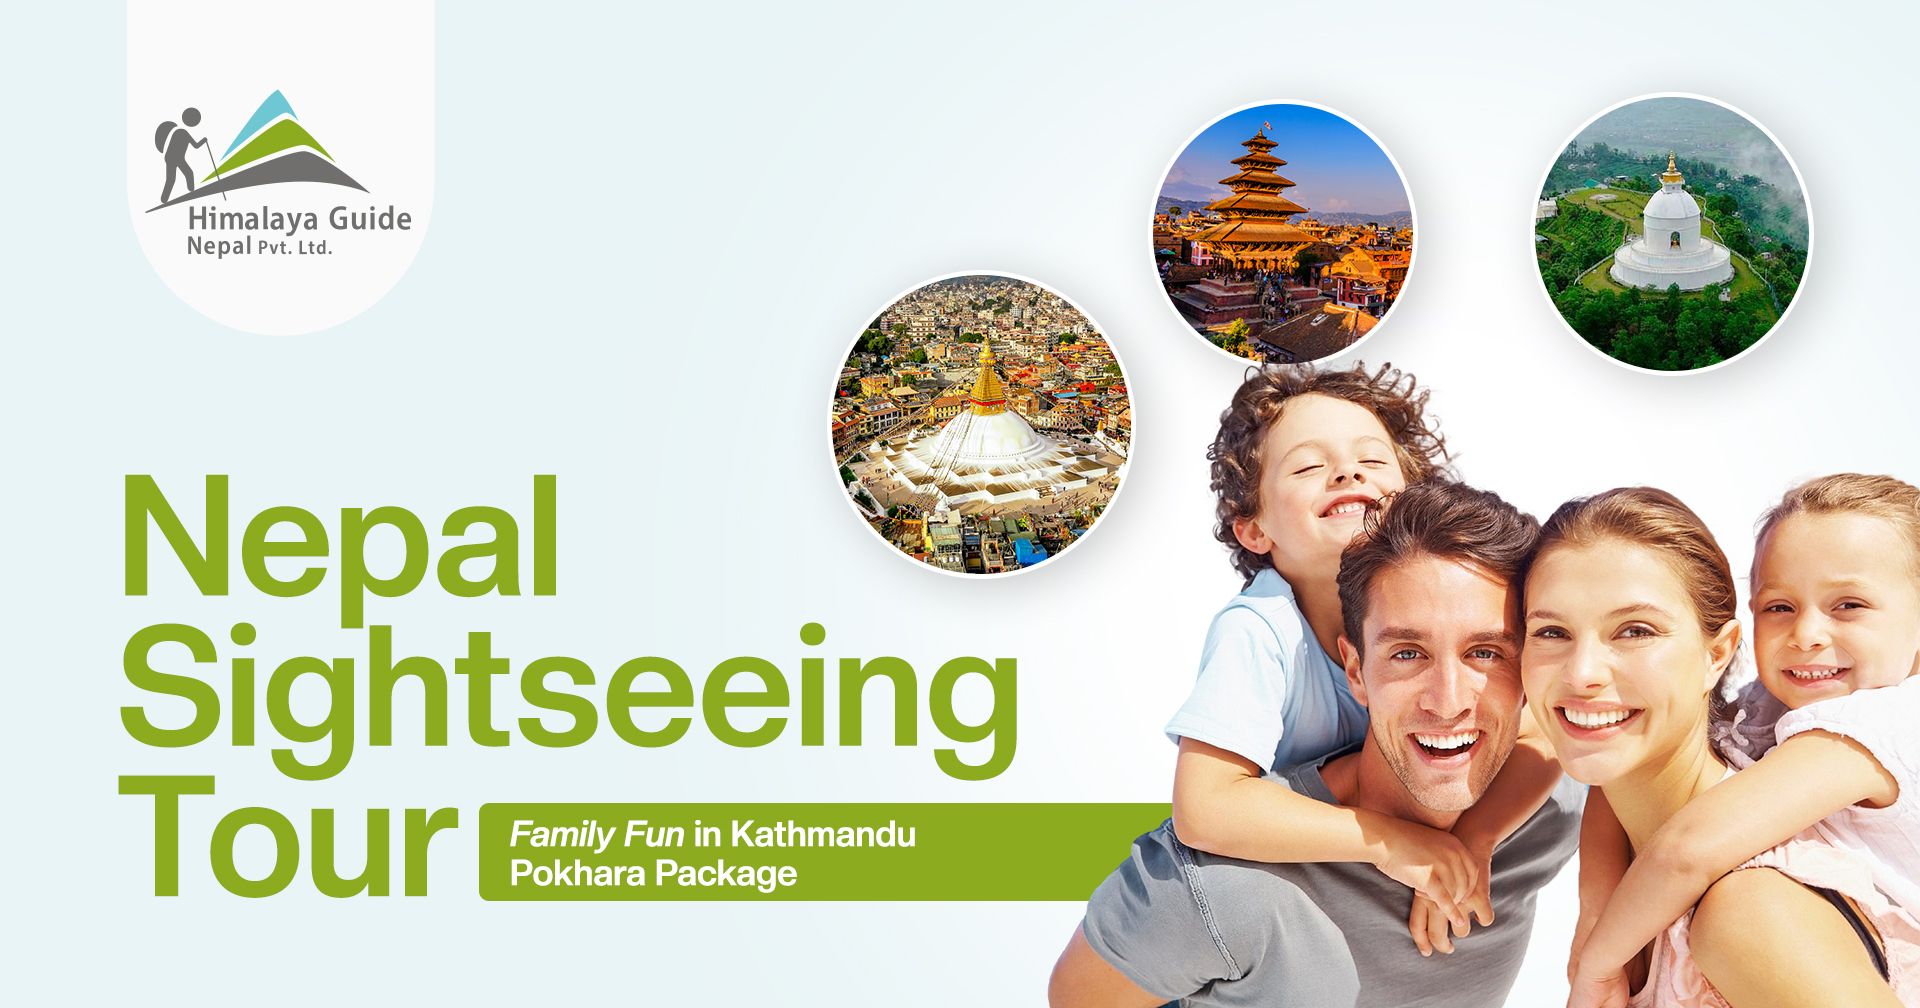 Nepal Sightseeing Tour: Family Fun in Kathmandu Pokhara Package